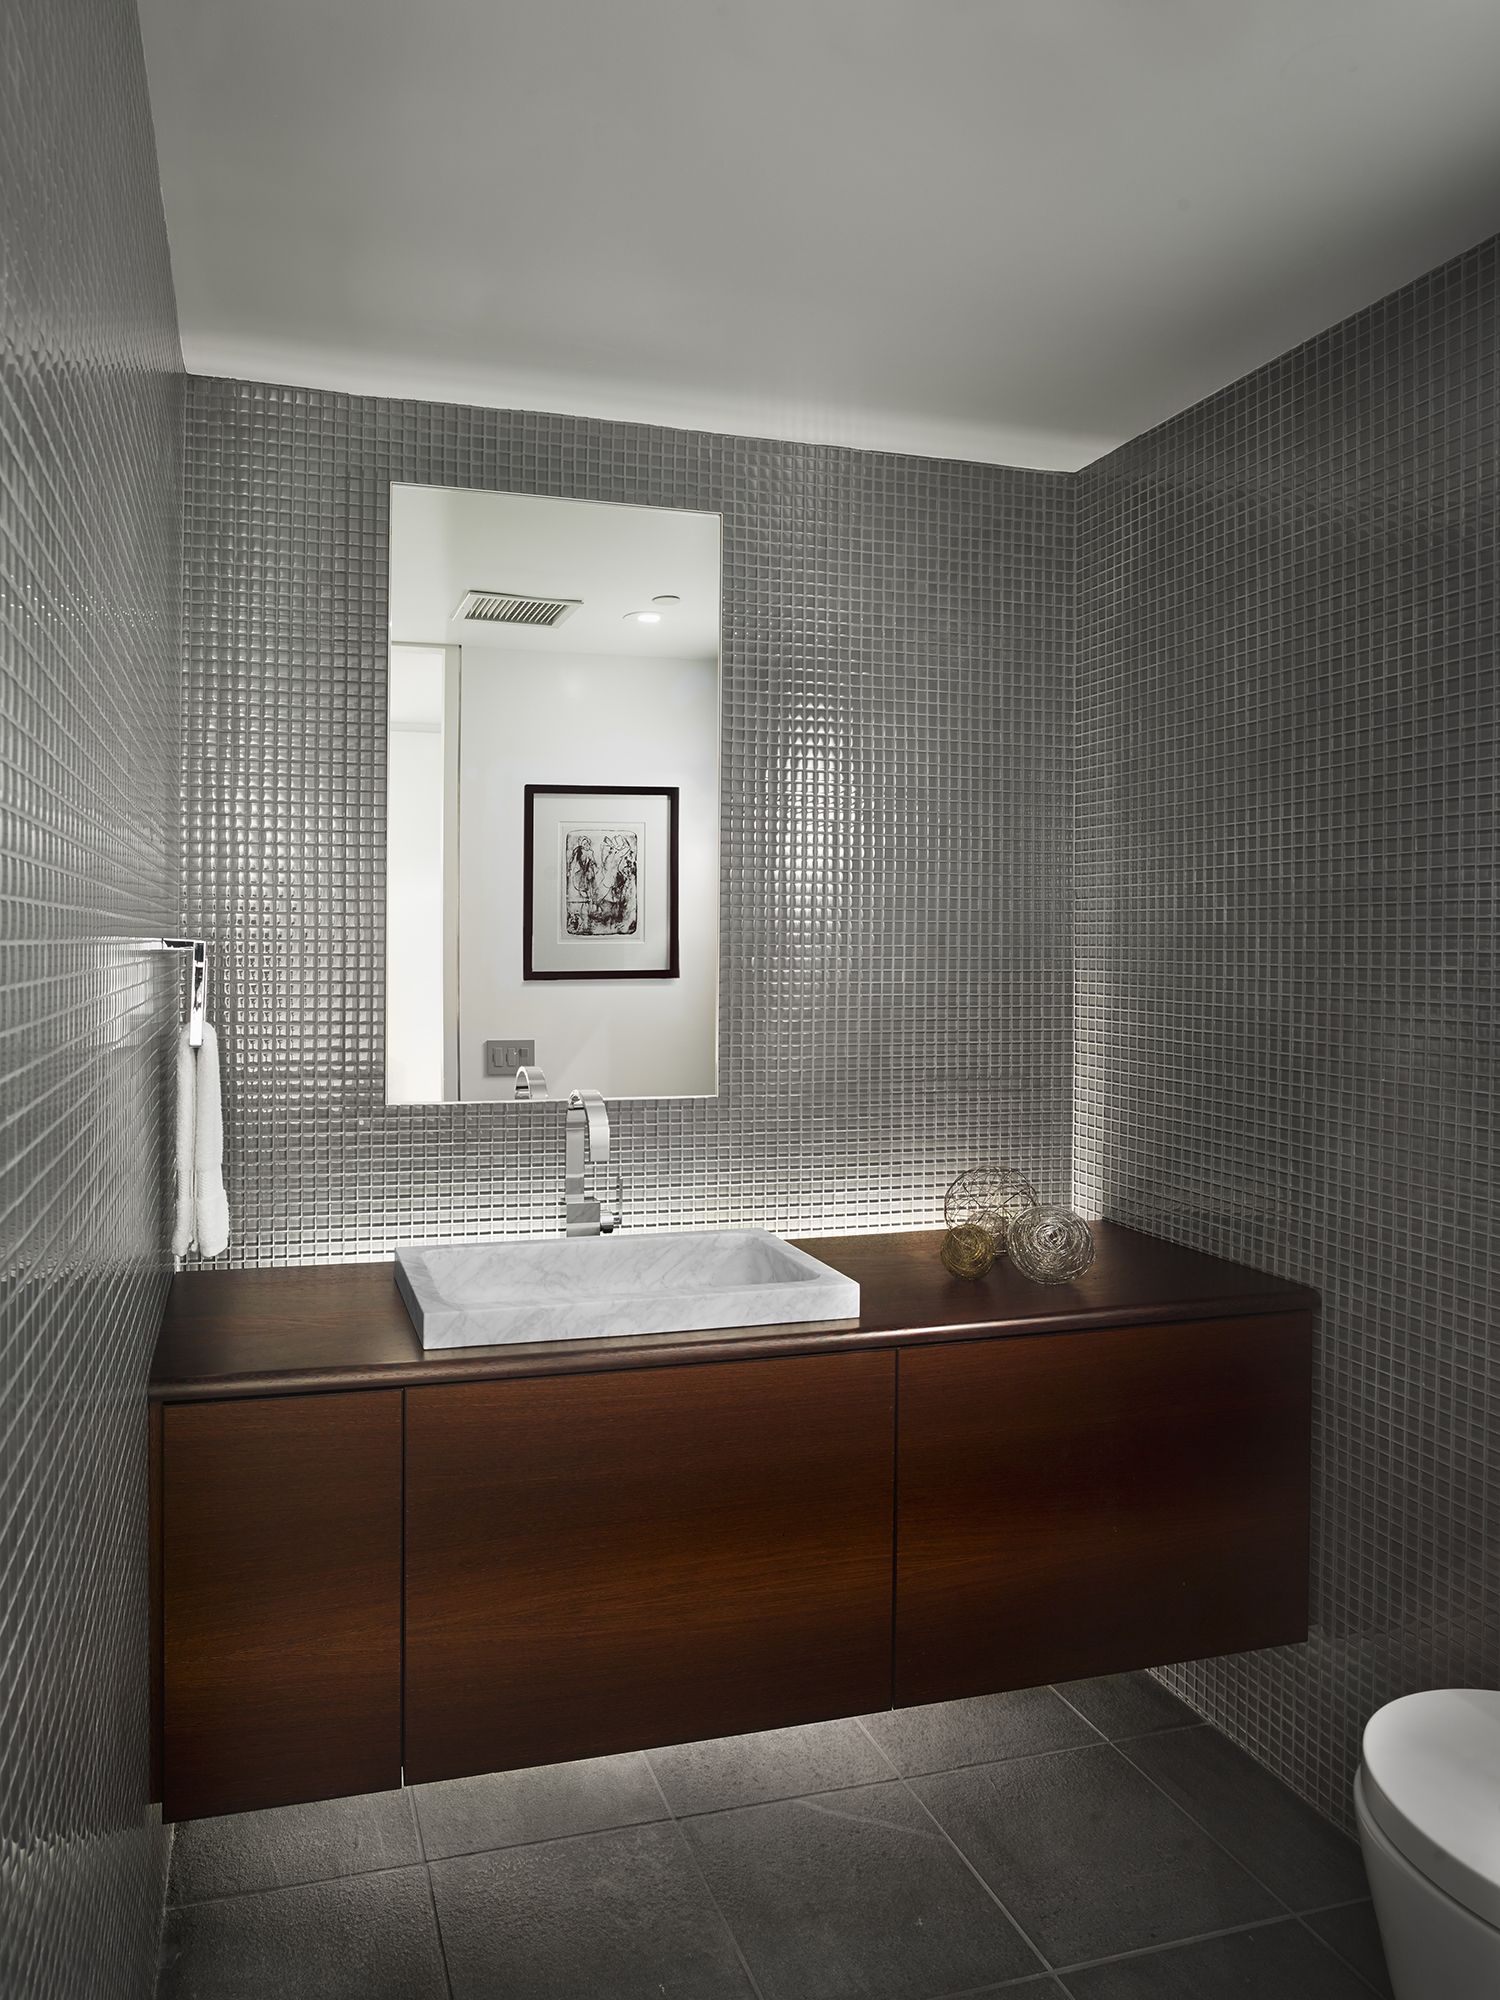 9 Modern Floating Vanity Ideas for Sleek Bathroom Storage